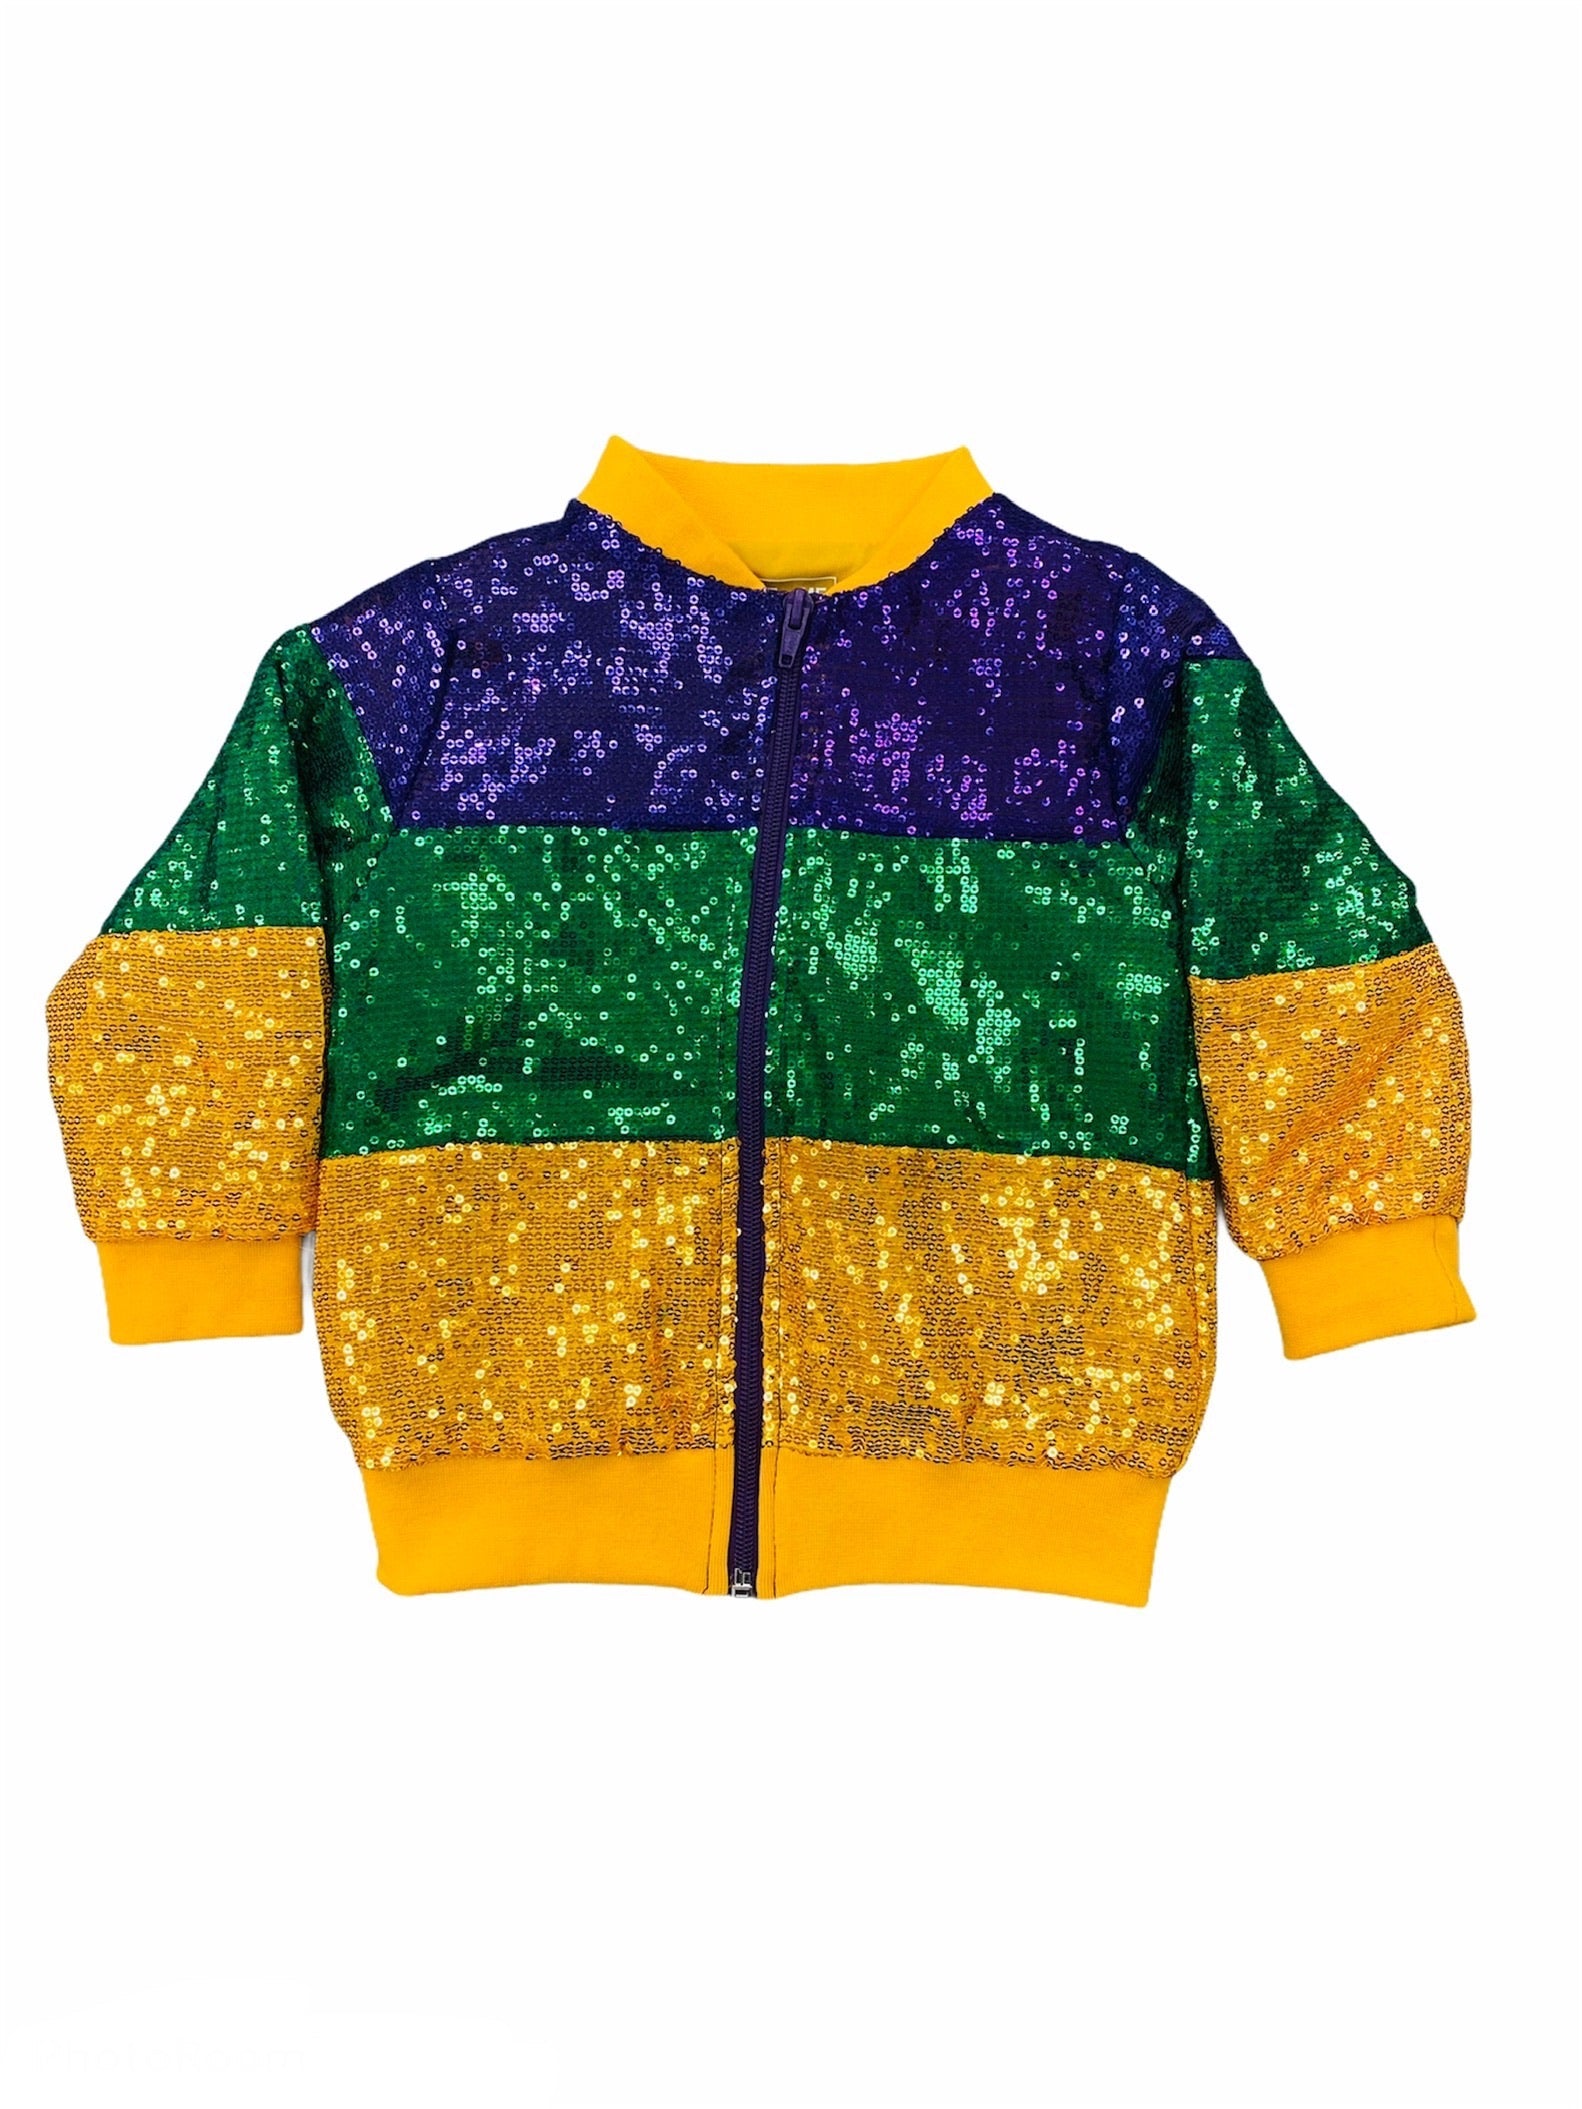 Mardi Gras Sequin Kids Jacket